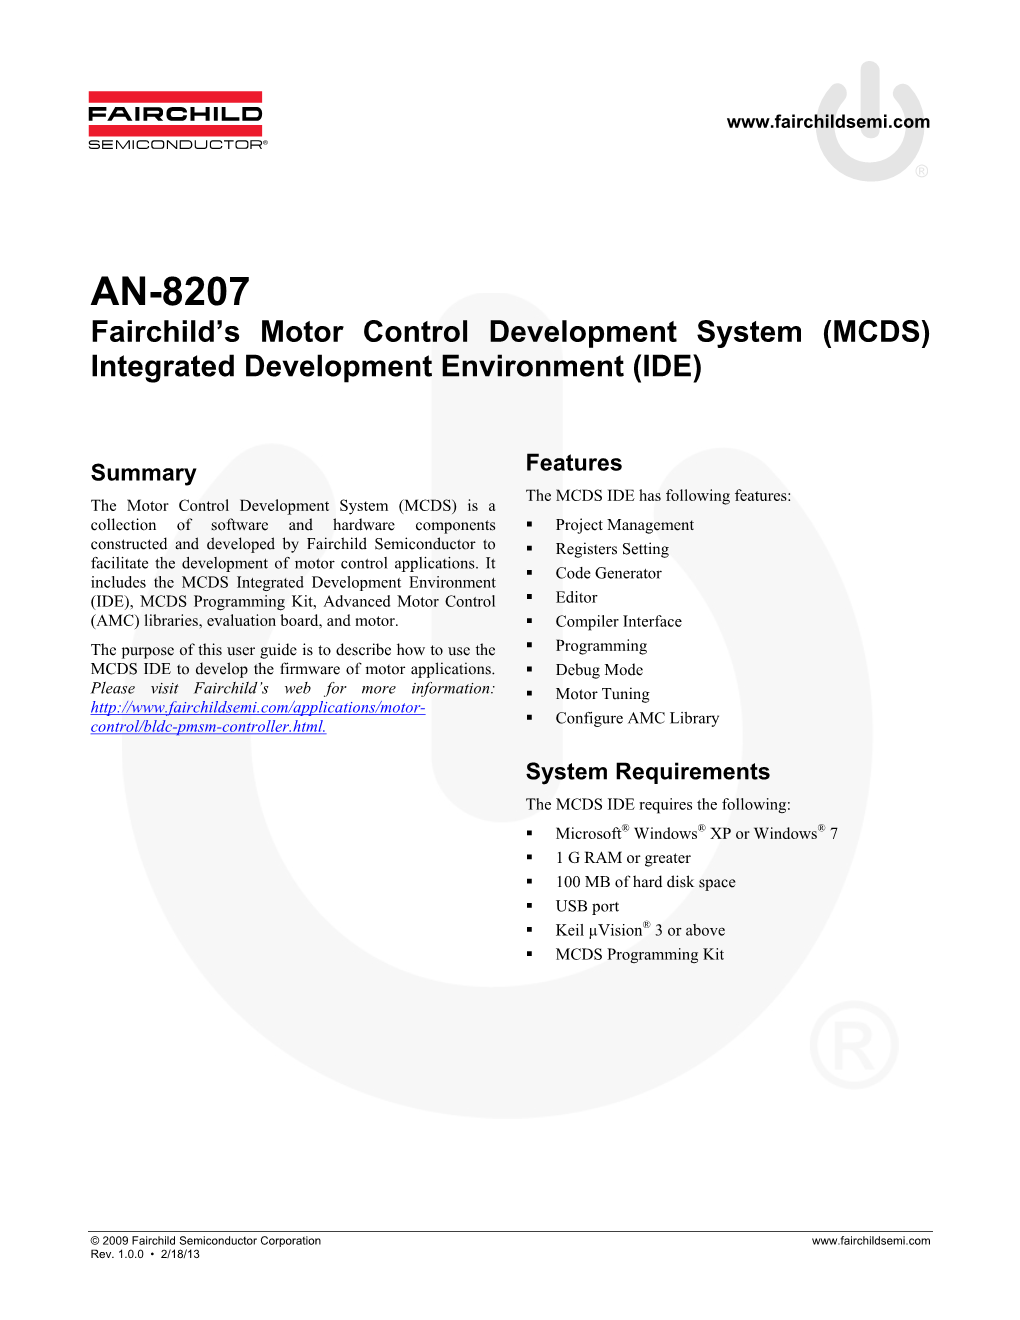 AN-8207 — Fairchild's Motor Control Development System (MCDS